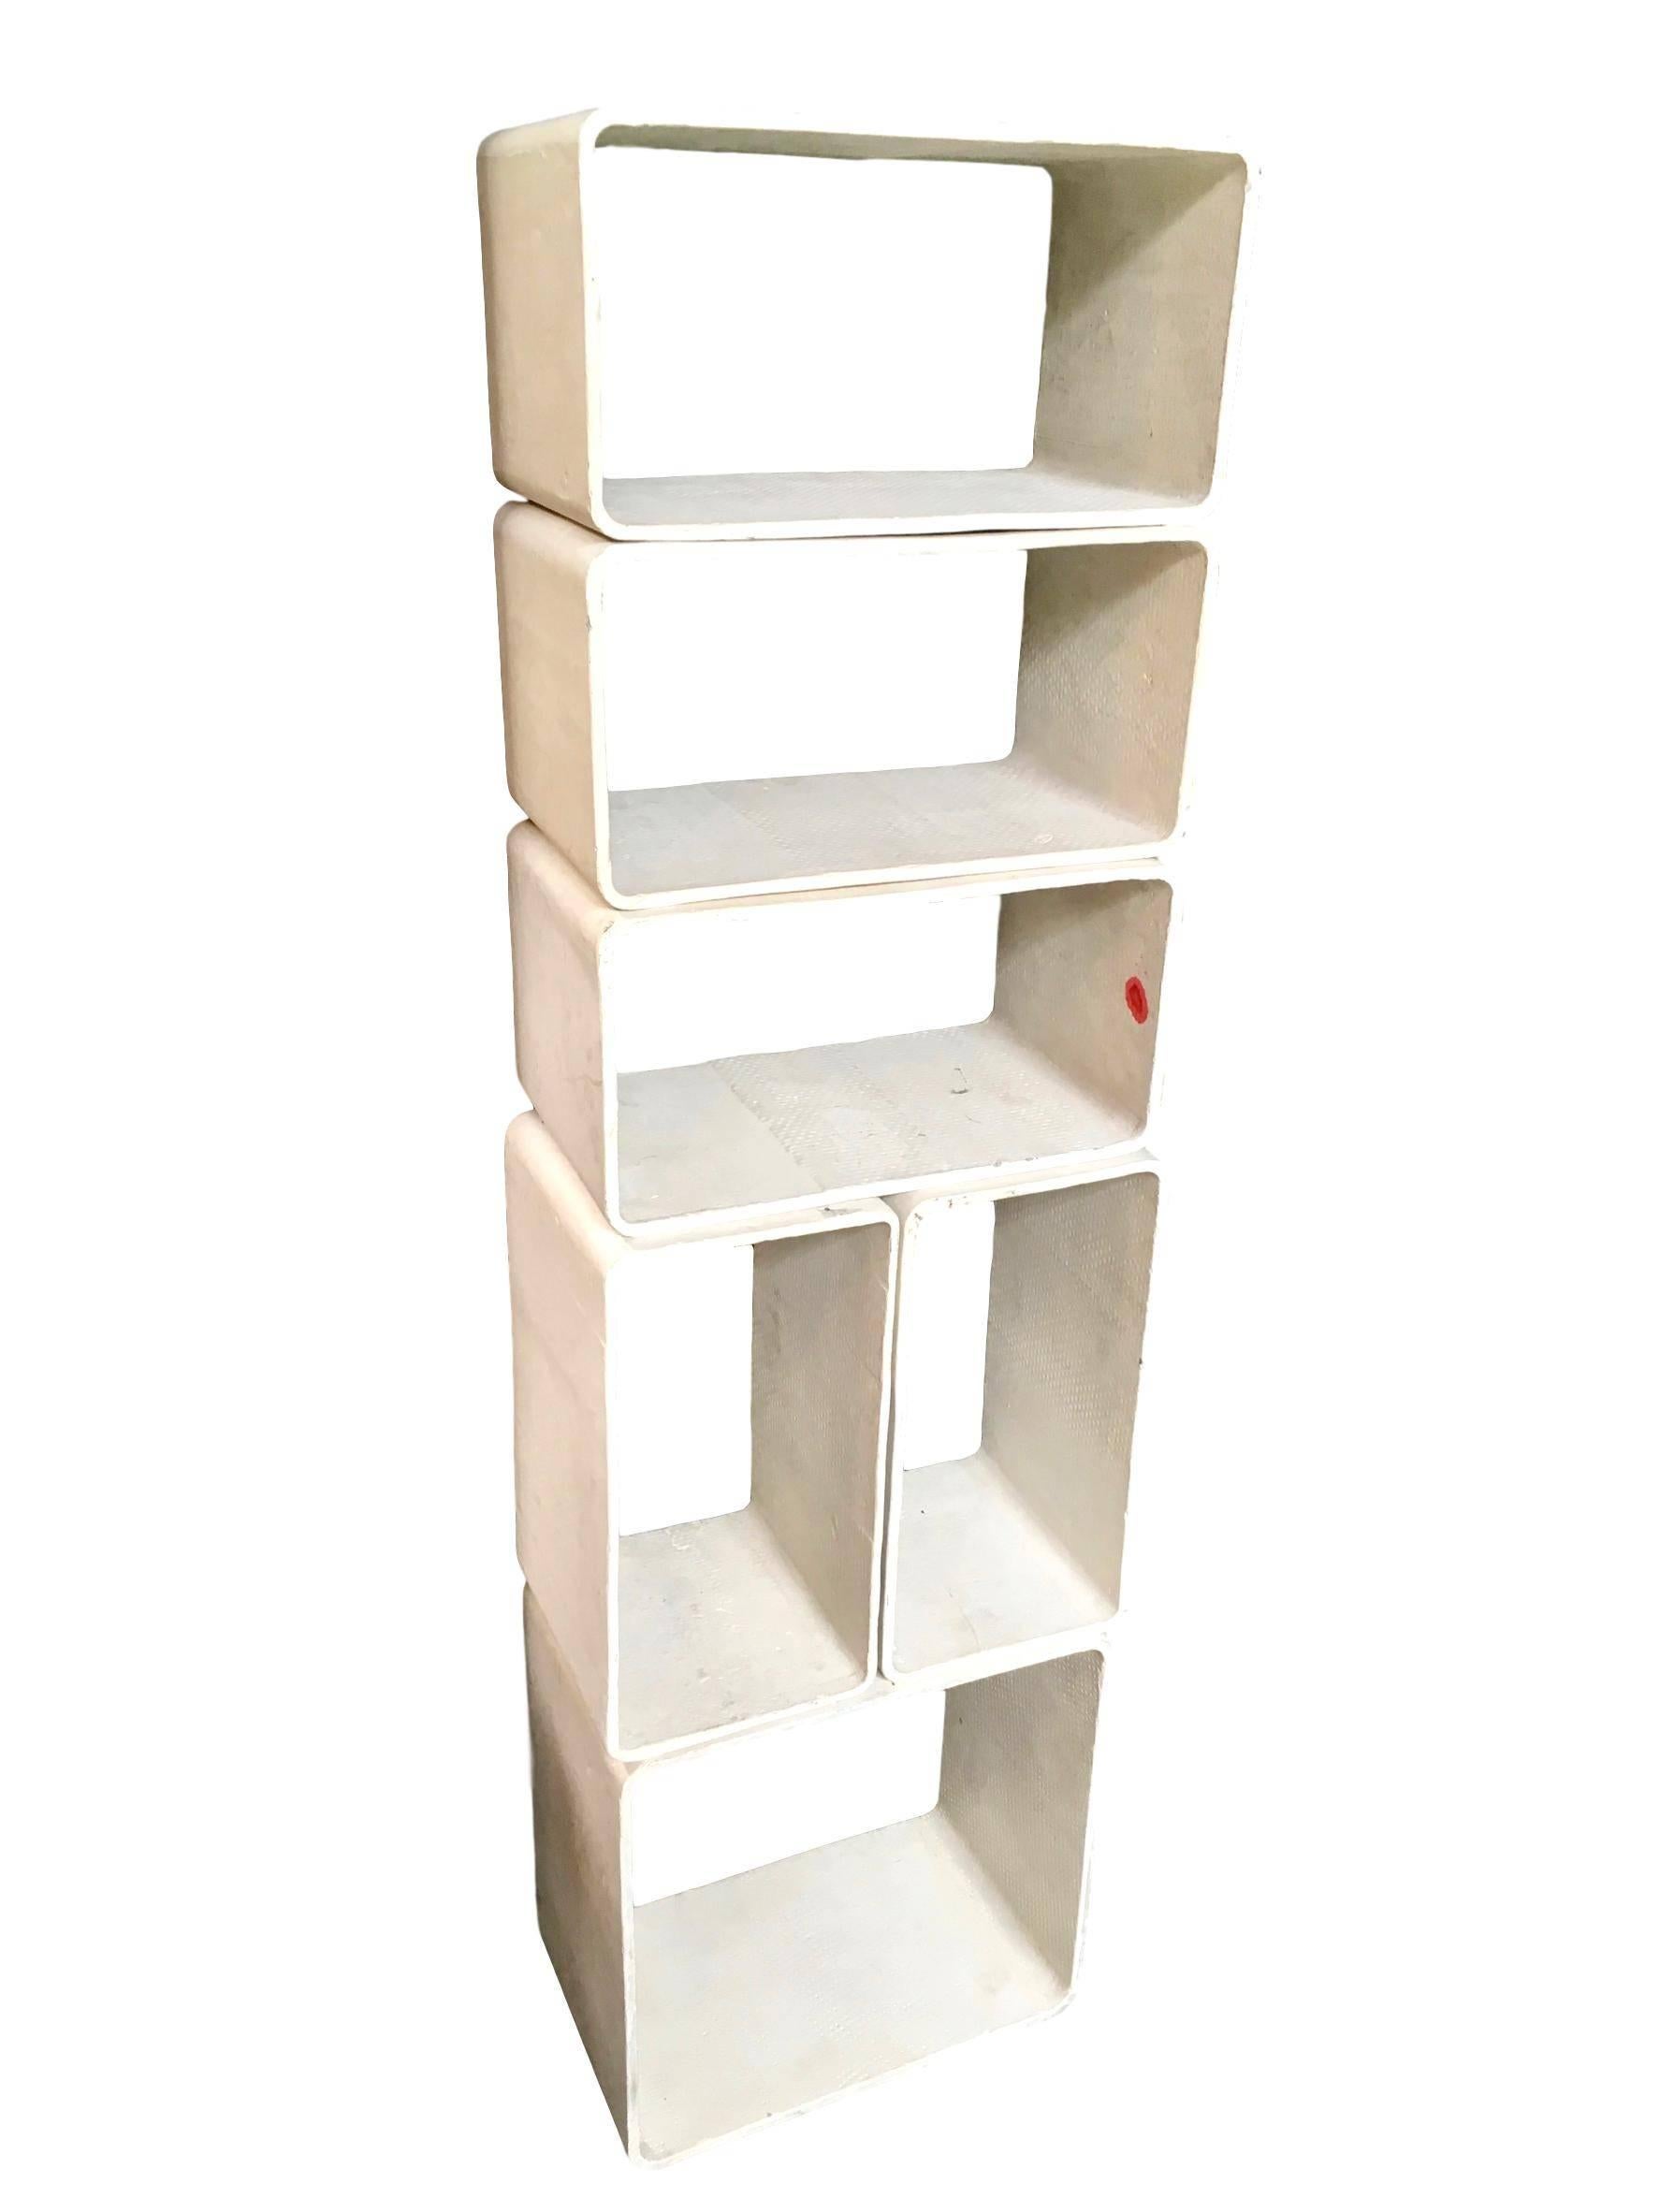 Swiss Willy Guhl Modular Six-Piece Bookcase